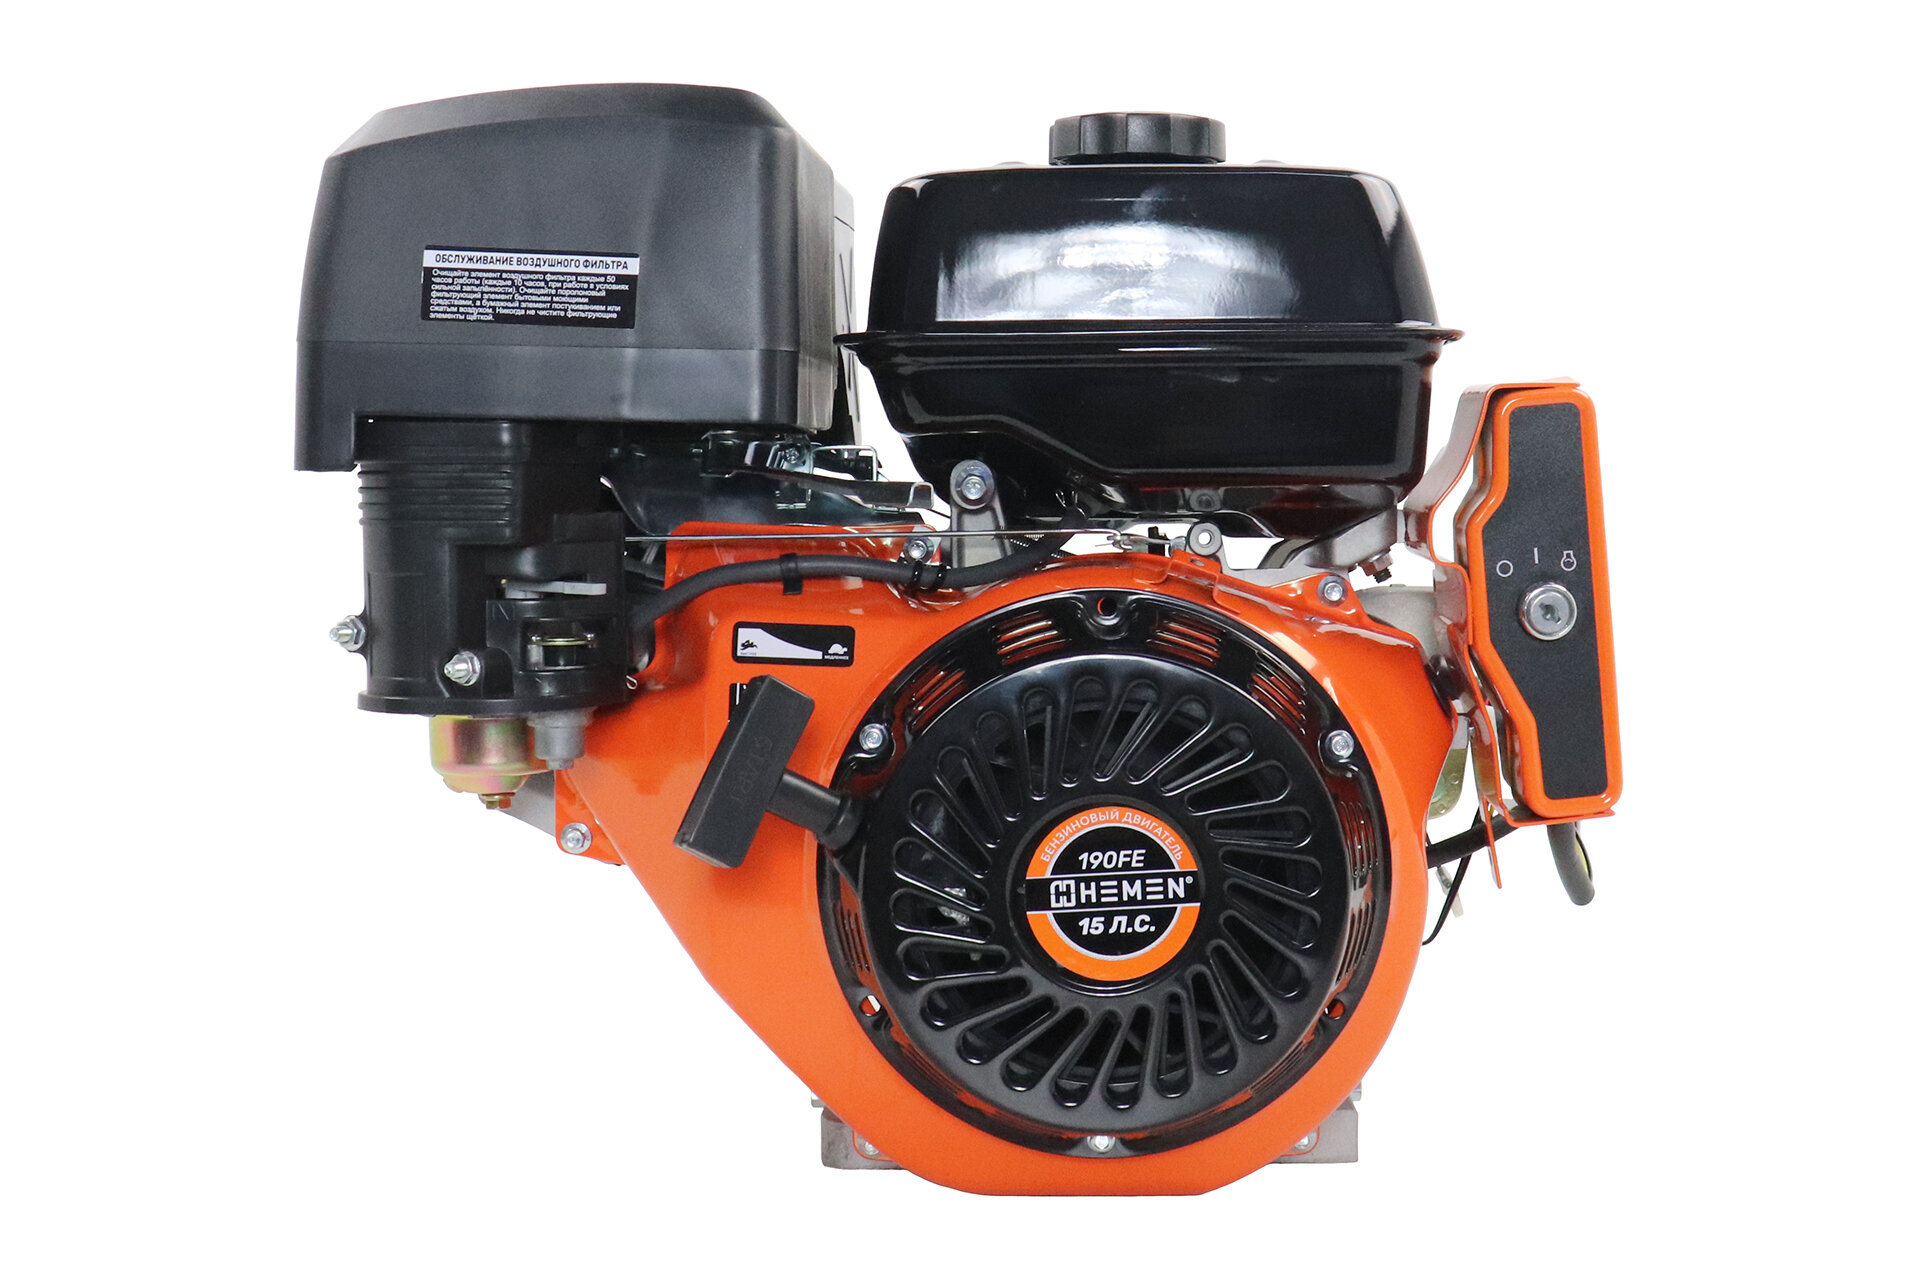 Двигатель HEMEN 150 л. с. с катушкой 15А180Вт 190FE (420 см3) электростартер вал 25 мм